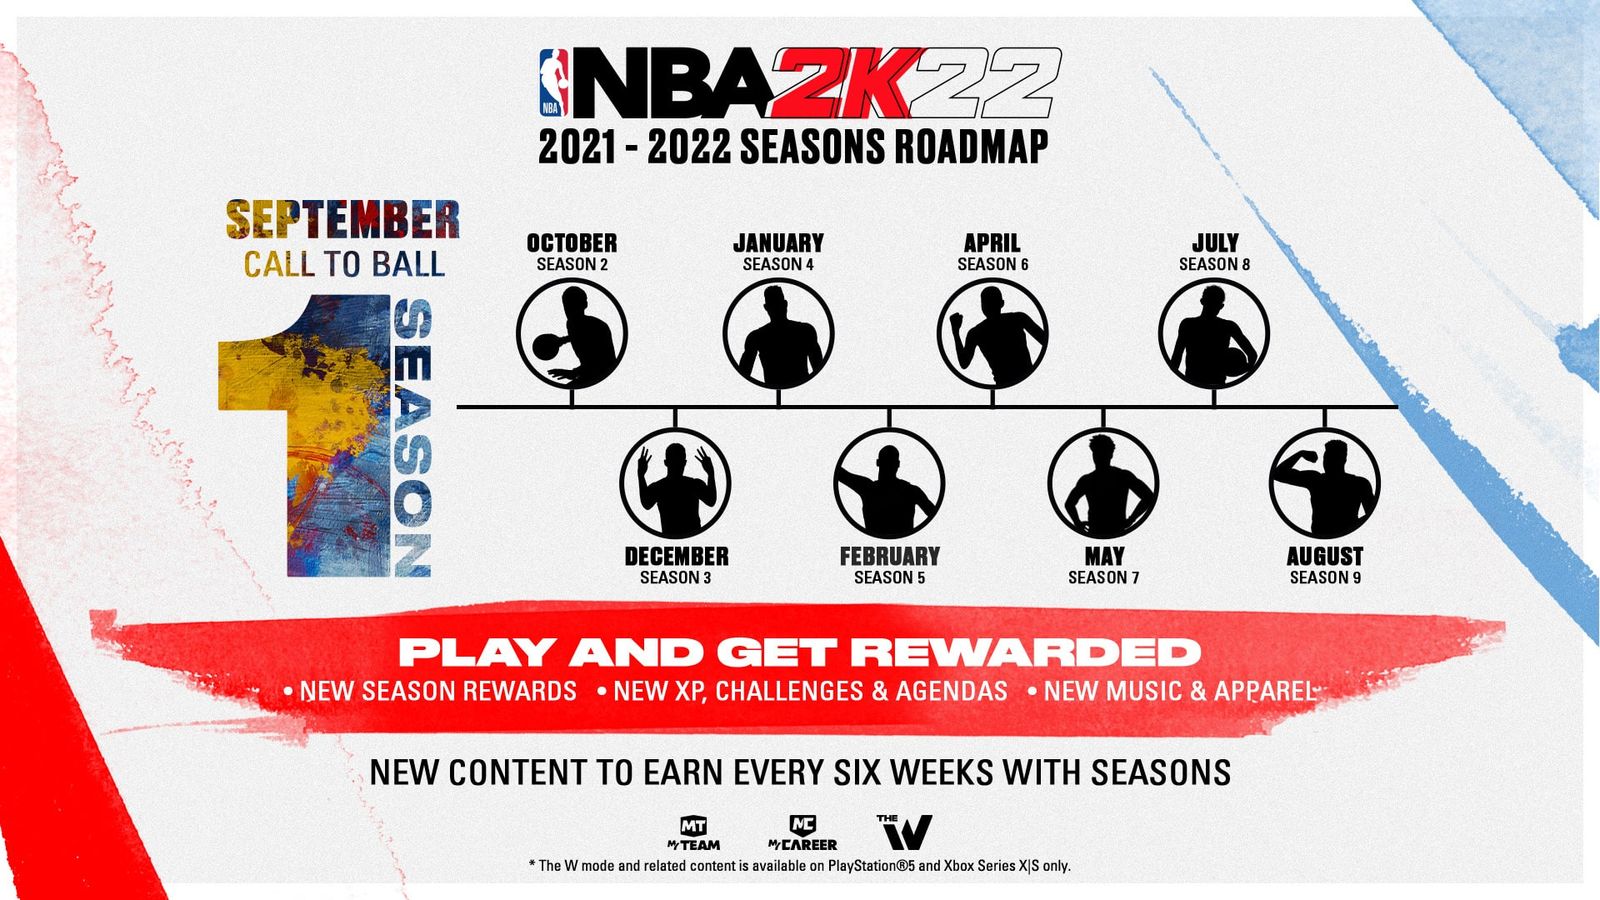 NBA 2K22 Season 2